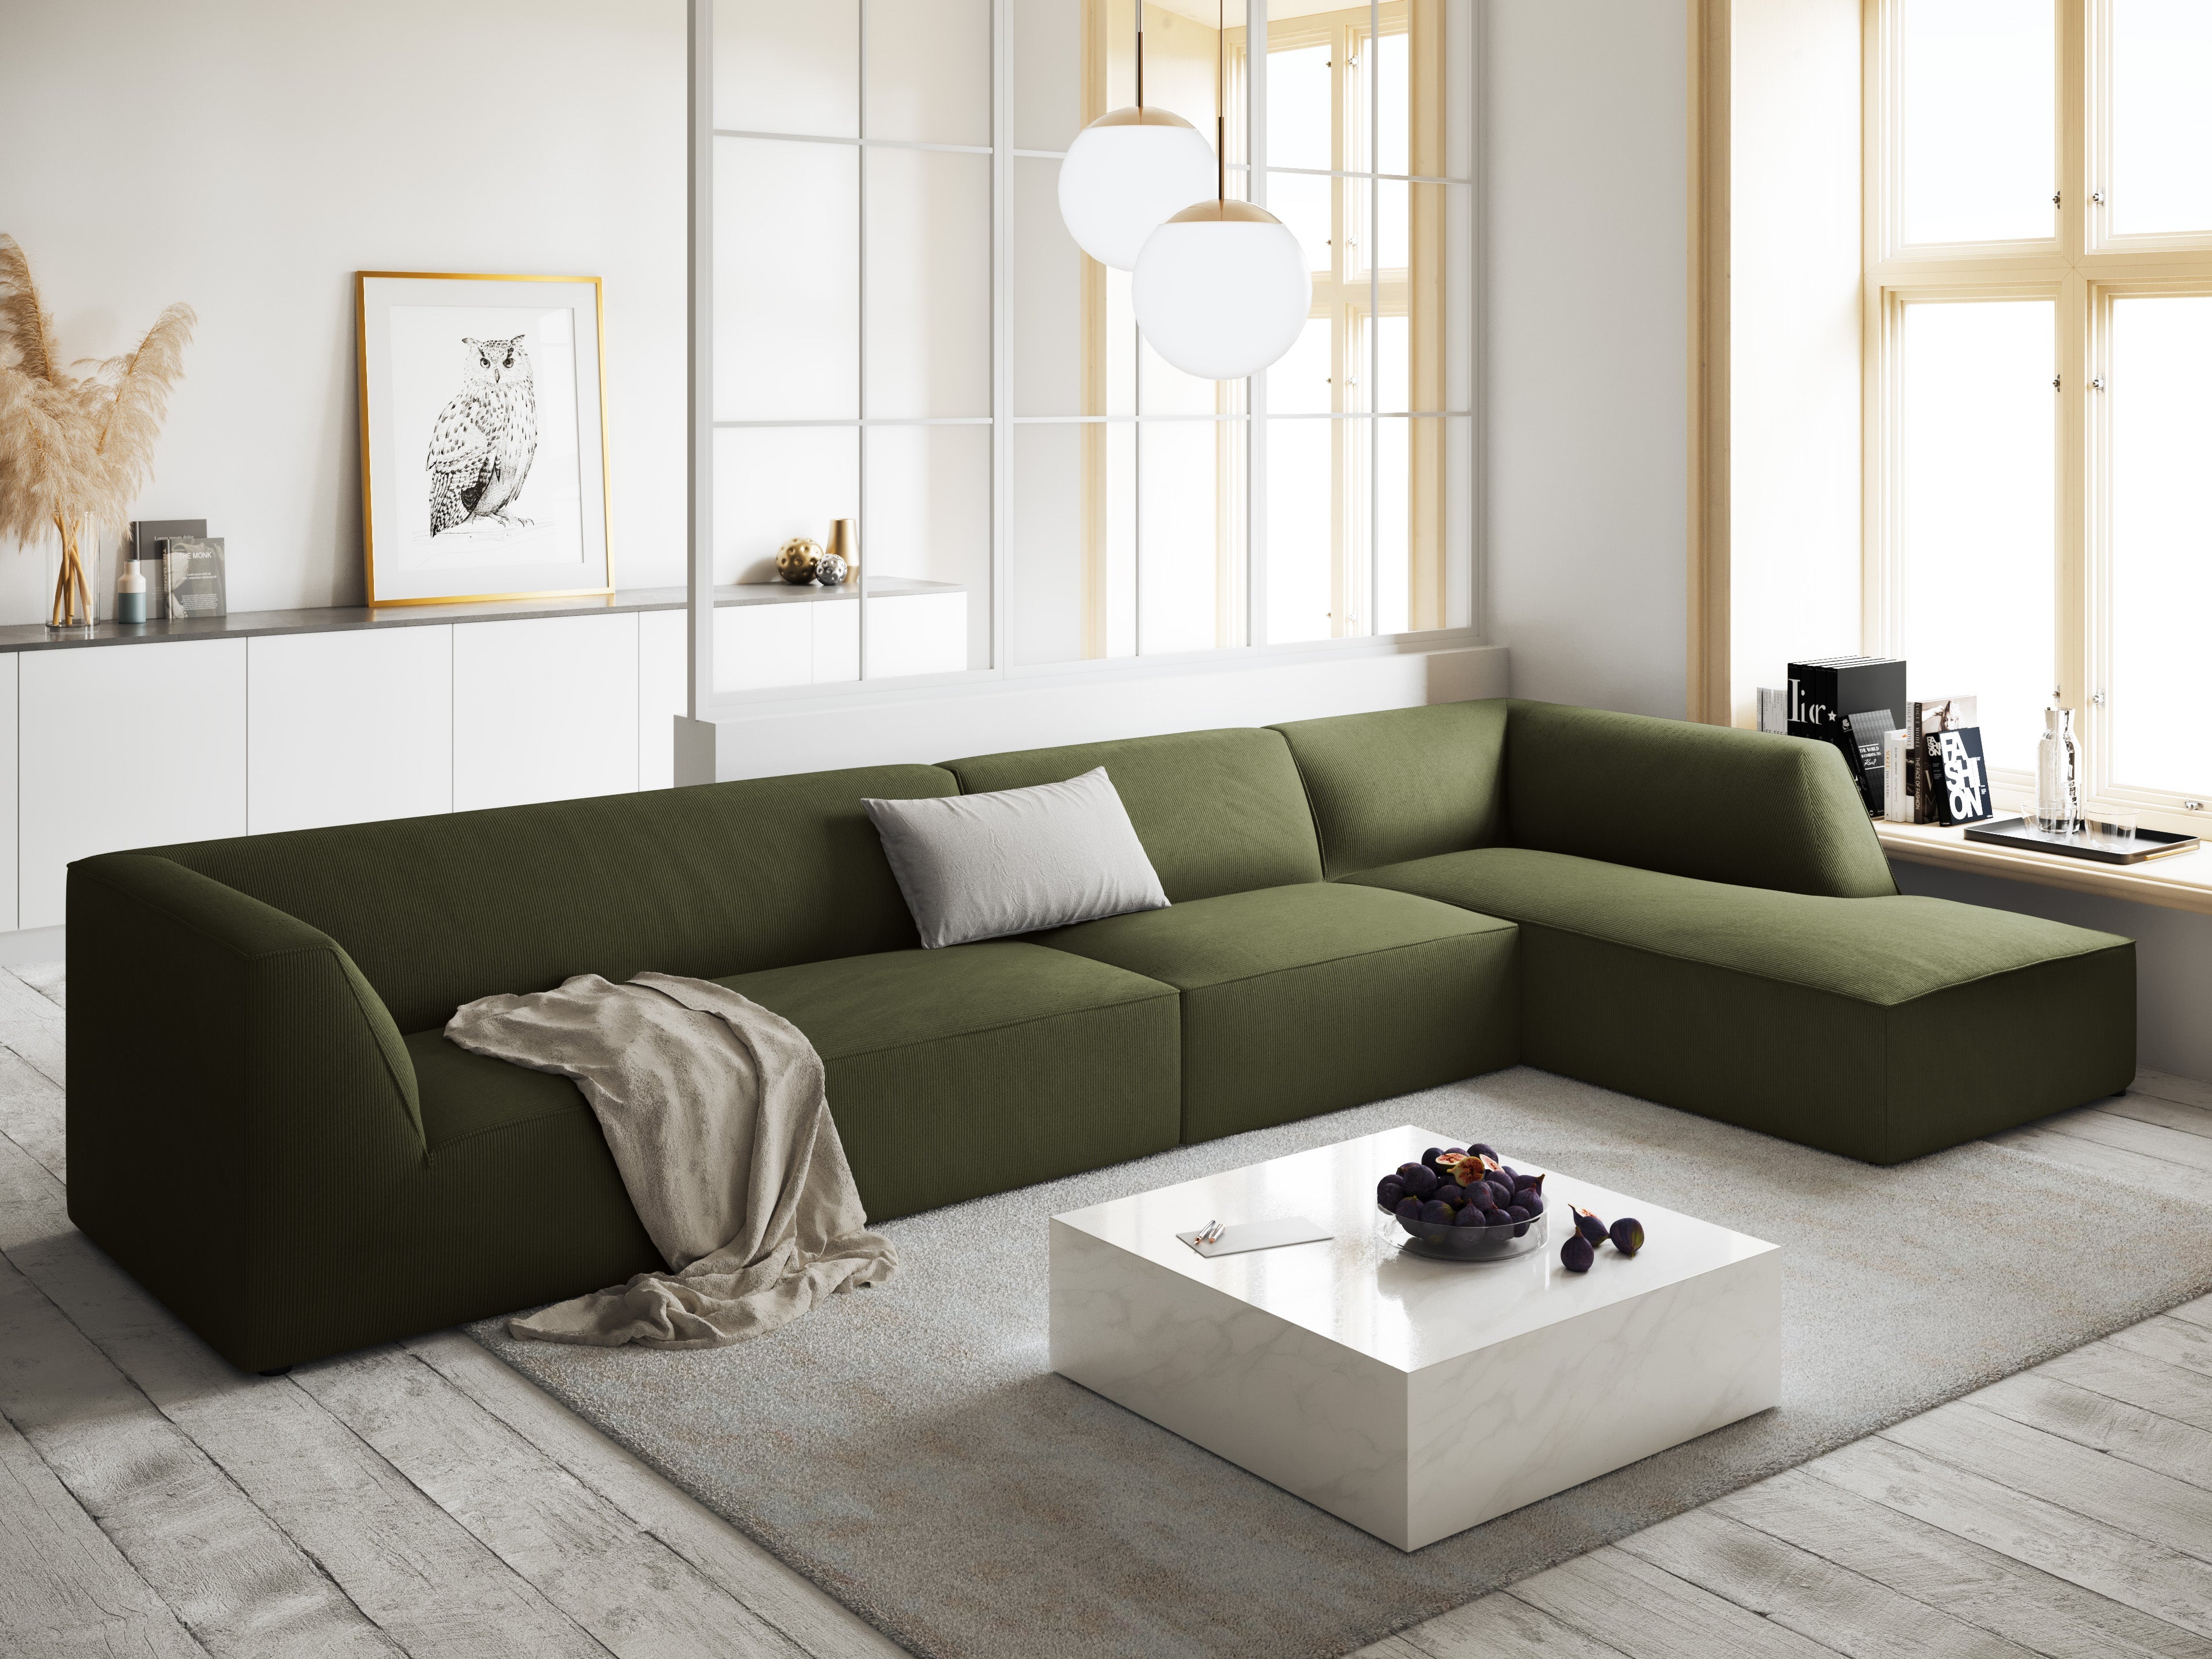 A green corner for Scandinavian interiors